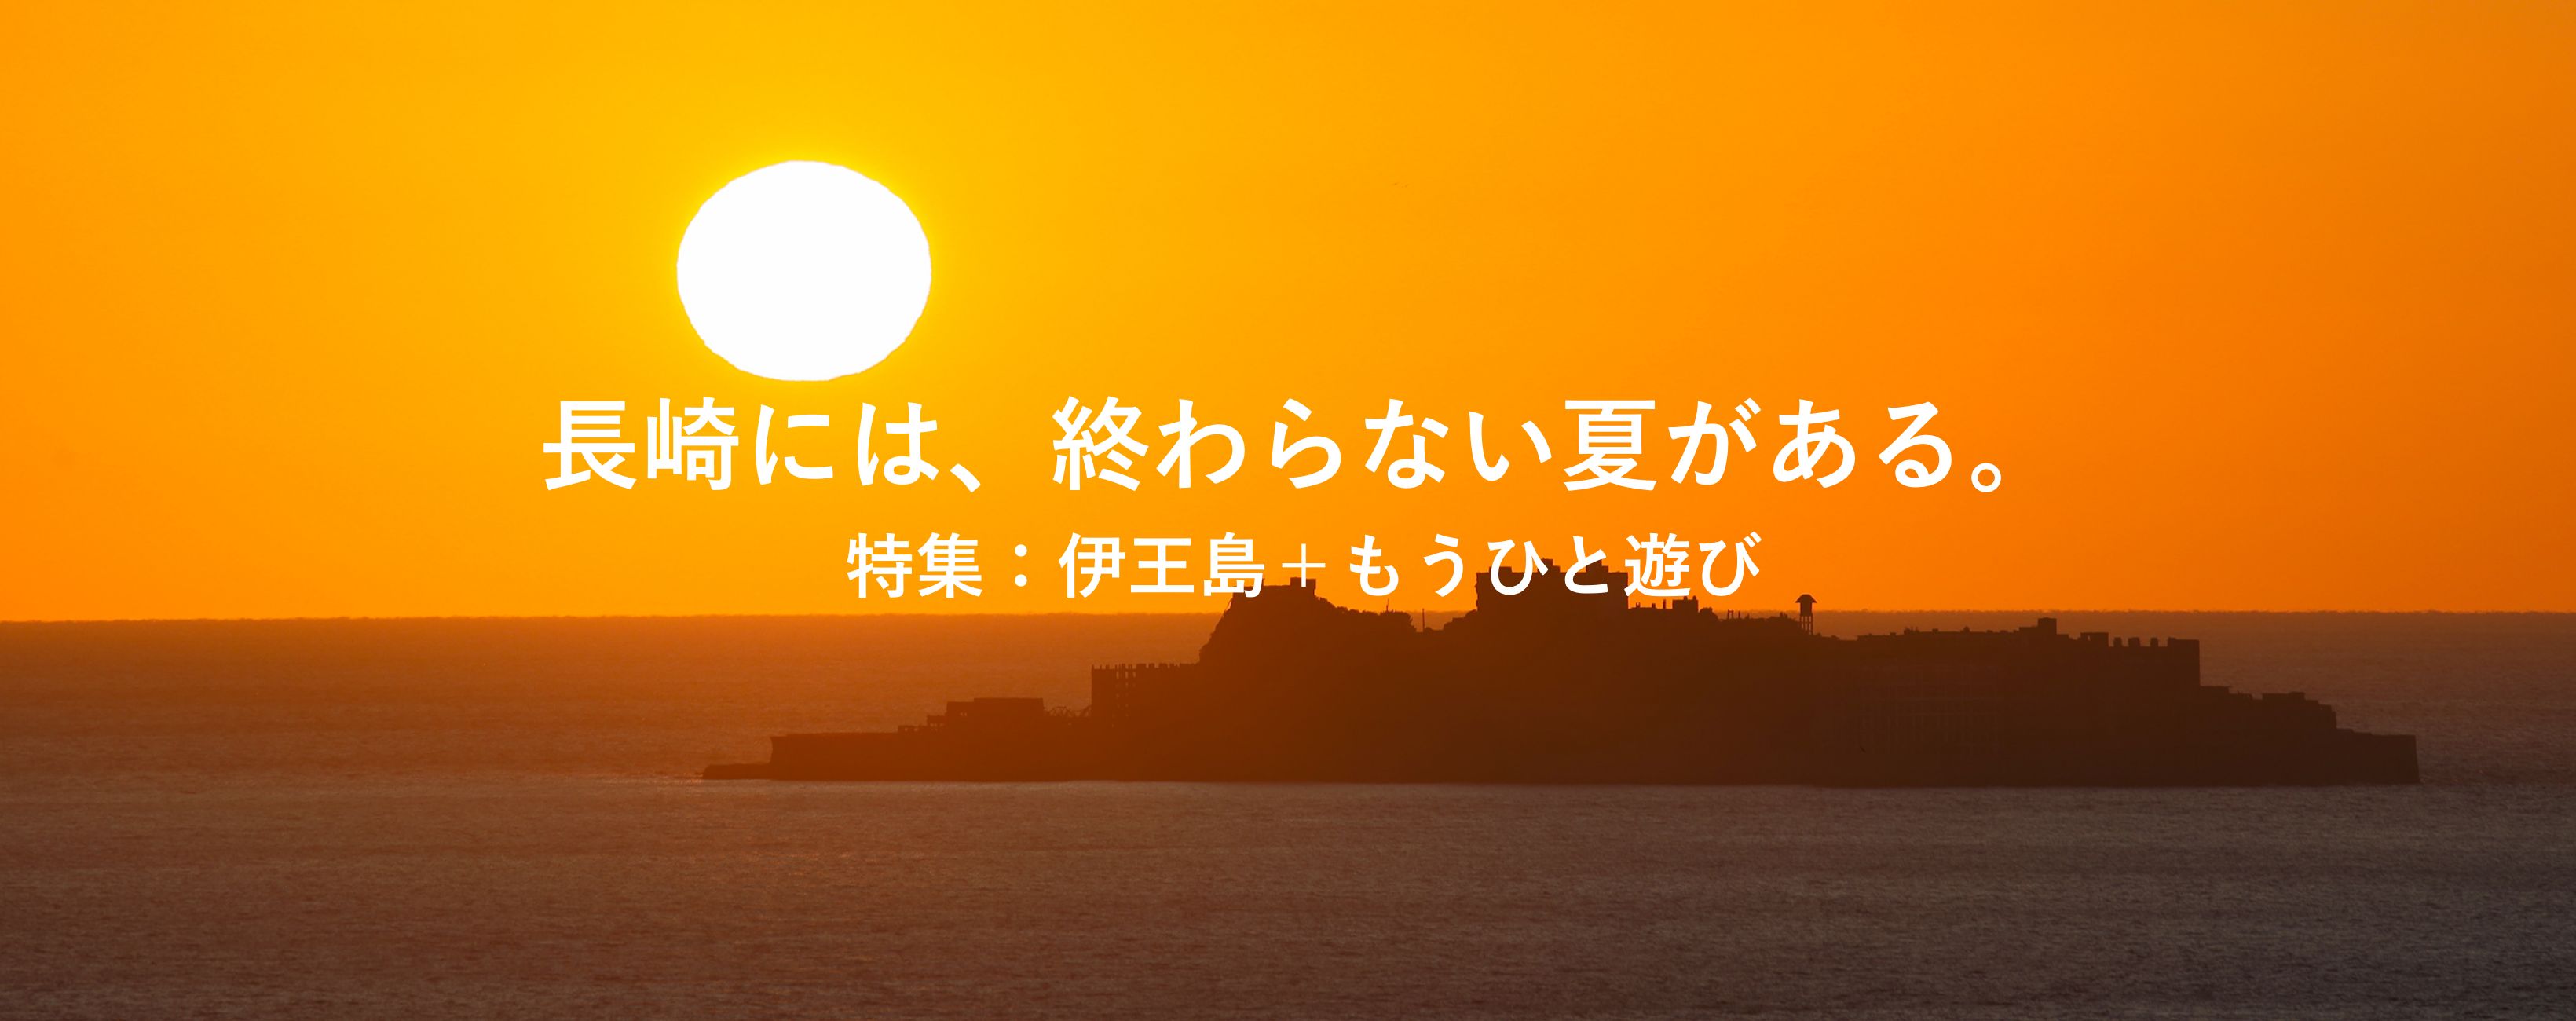 長崎には、終わらない夏がある。